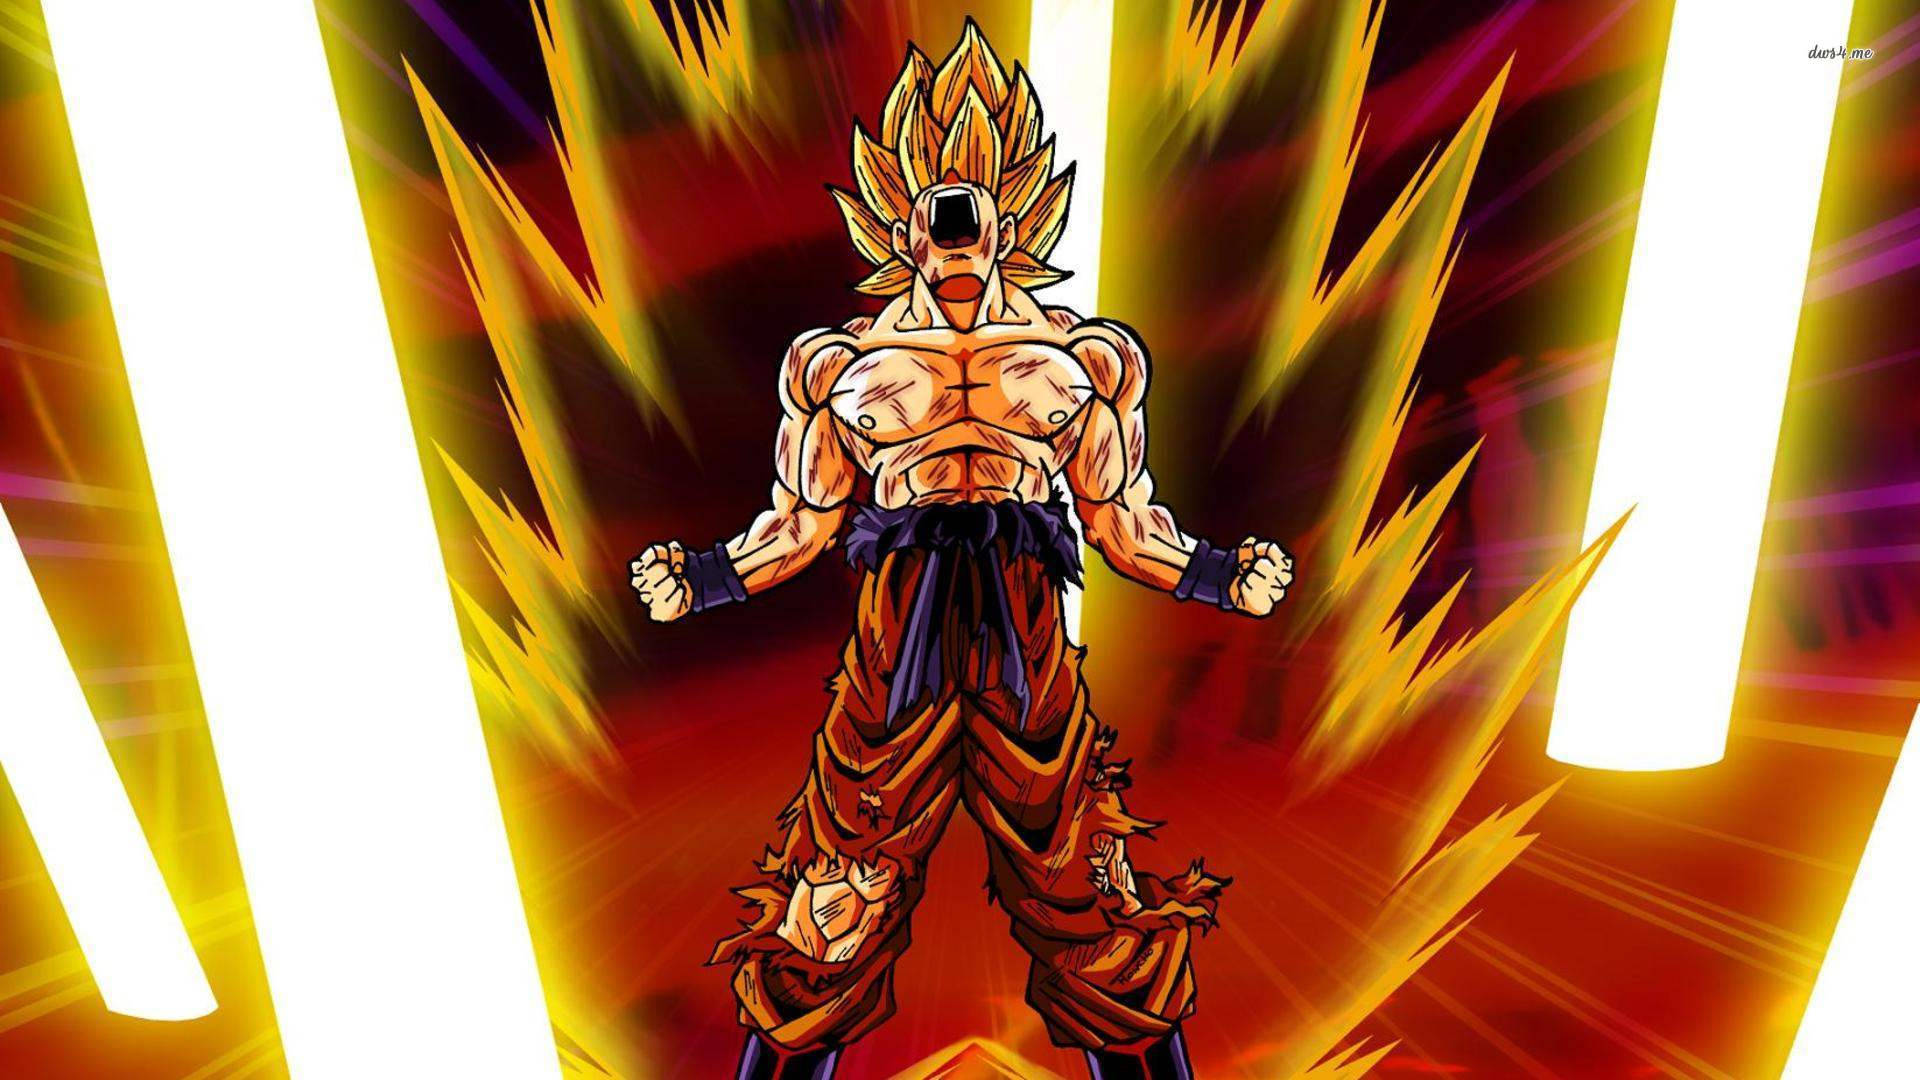 Intense Training - Goku In Super Saiyan Form